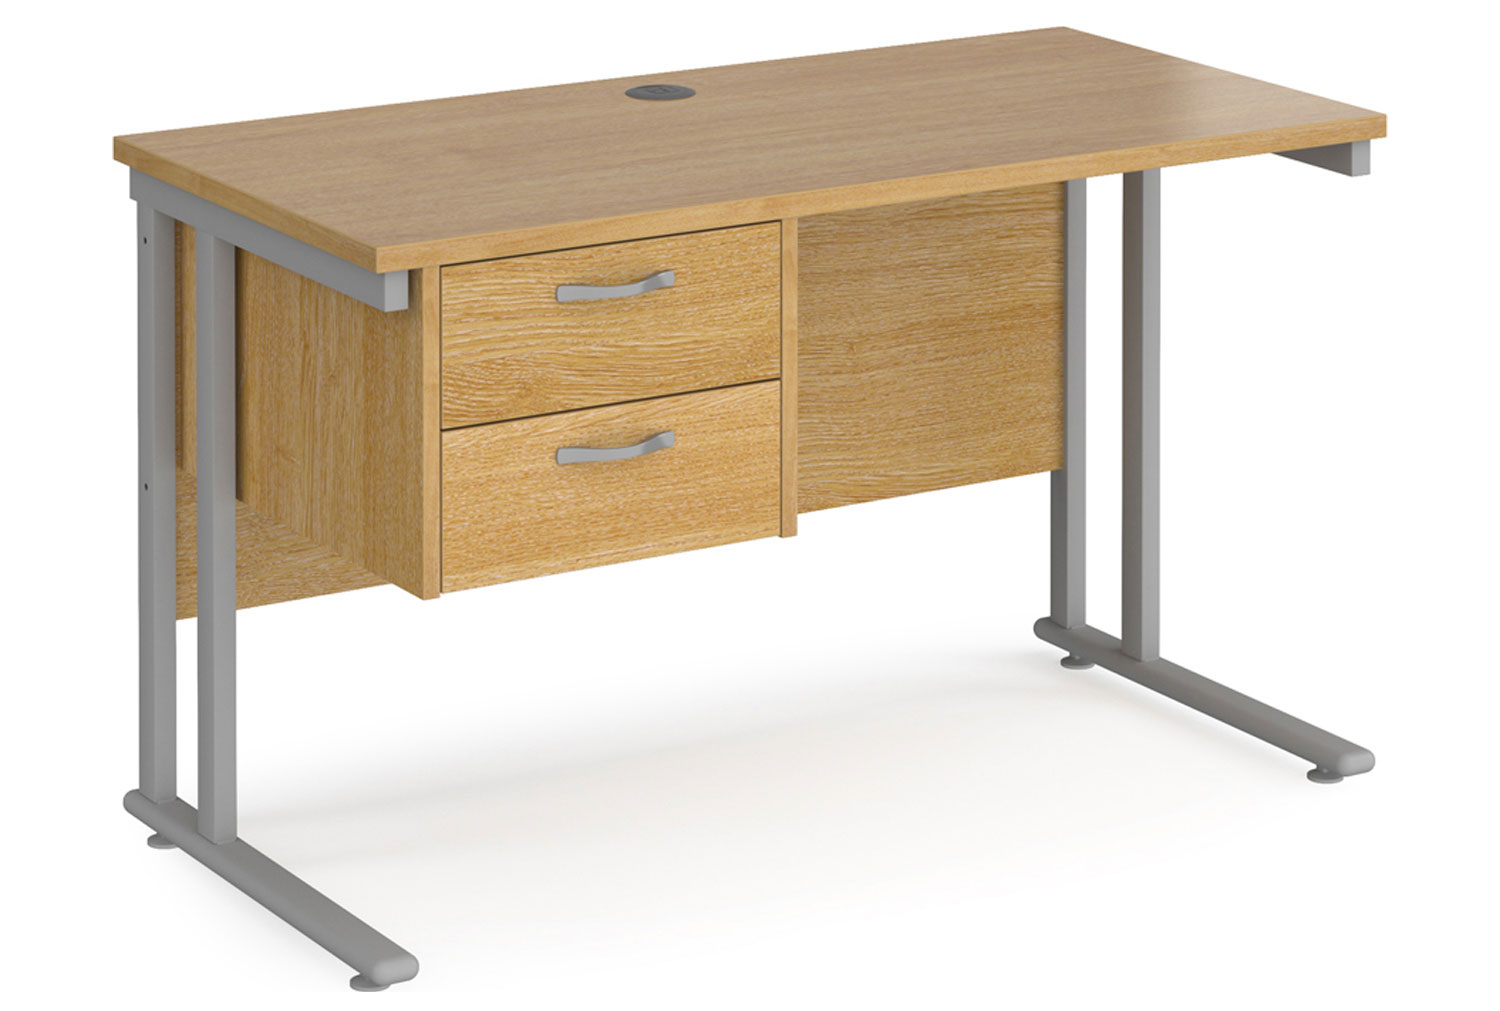 Value Line Deluxe C-Leg Narrow Rectangular Office Desk 2 Drawers (Silver Legs), 120w60dx73h (cm), Oak, Fully Installed